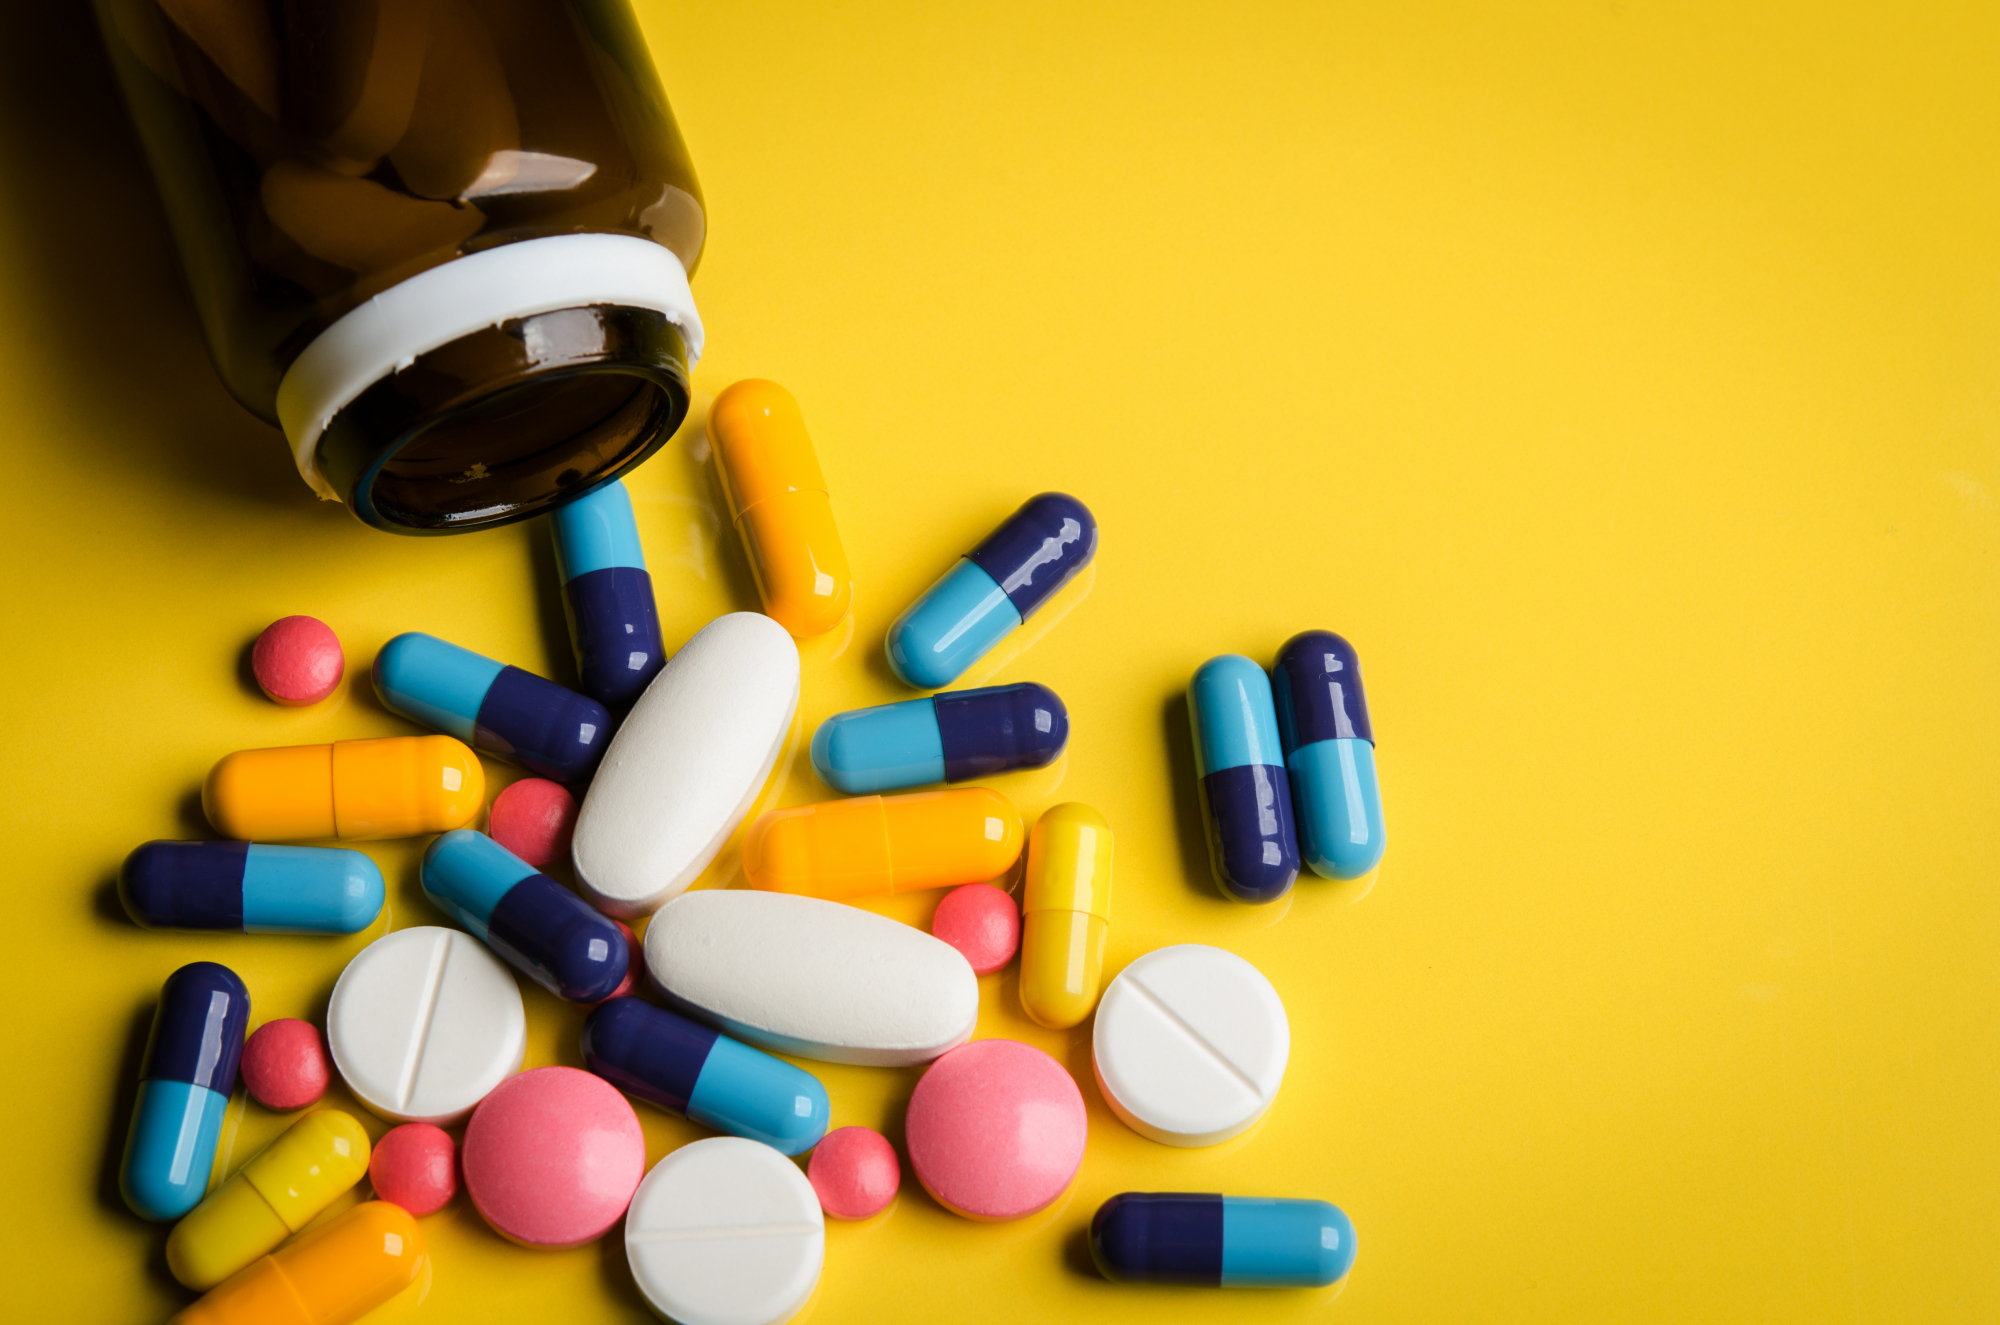 Τα φάρμακα για την παλινδρόμηση οξέος συνδέονται με υψηλότερο κίνδυνο για άνοια σύμφωνα με νέα μελέτη